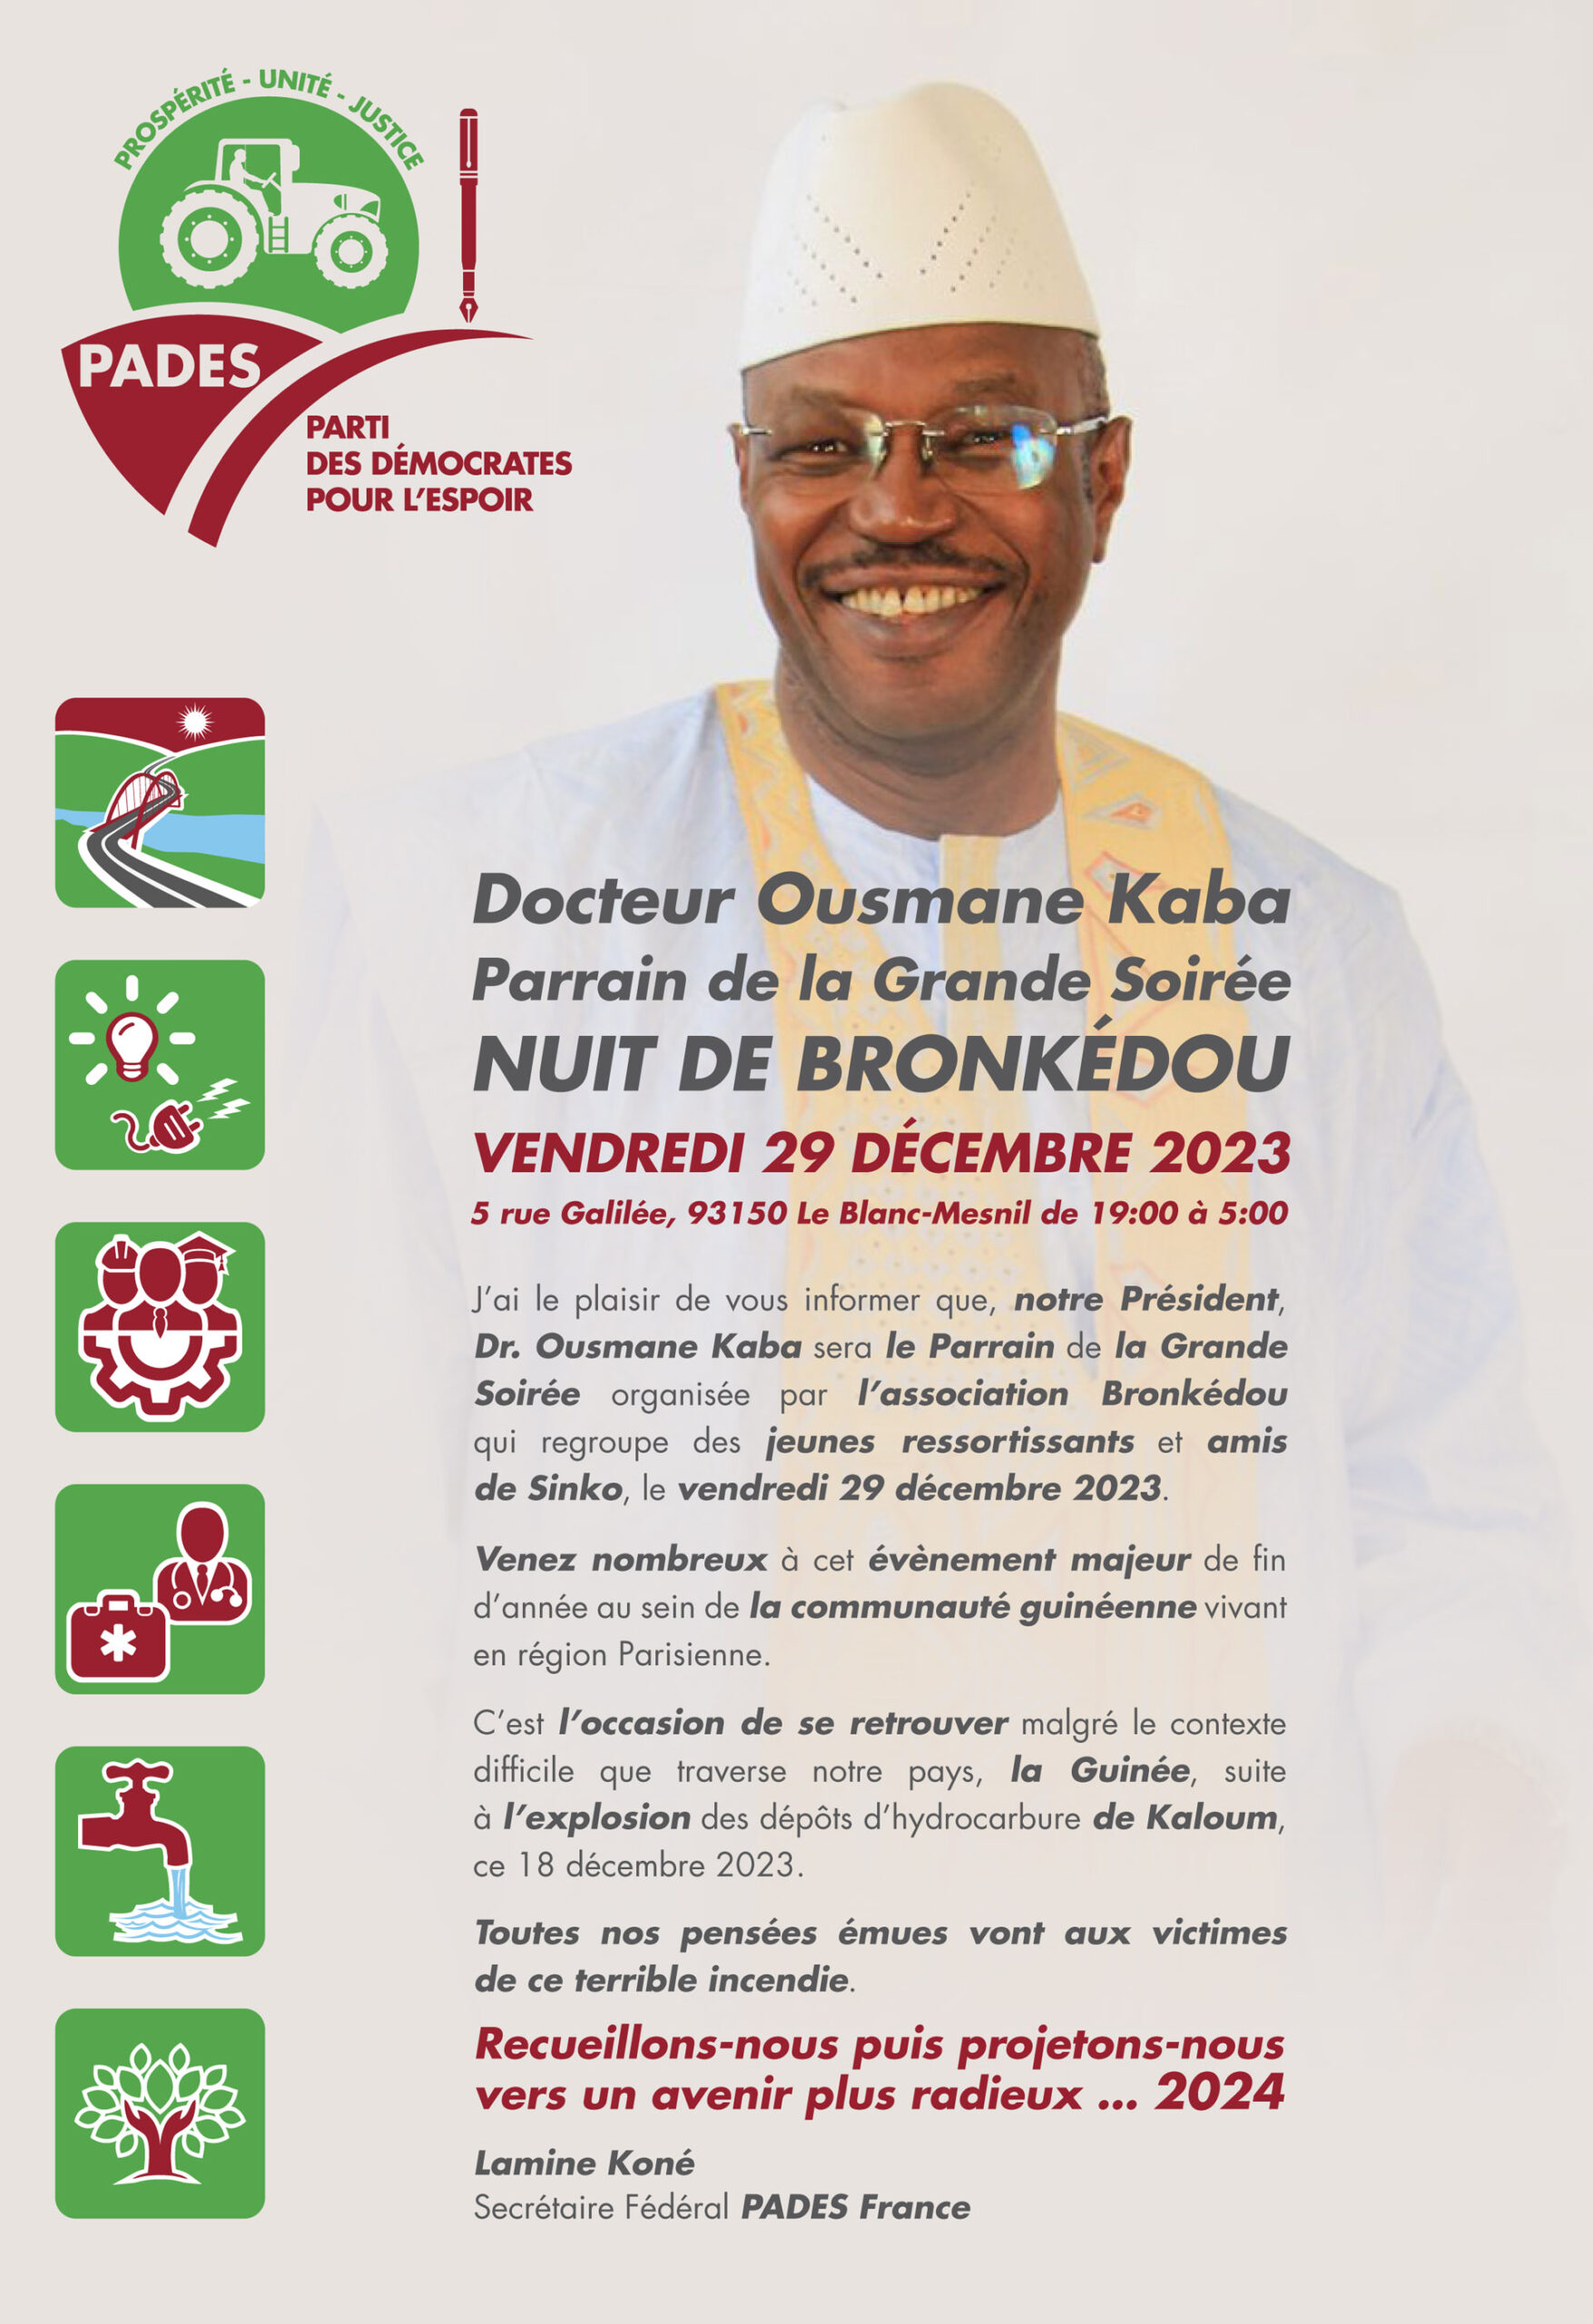 Docteur Ousmane Kaba Parrain de la Grande Soirée Nuit de Bronkedou. Vendredi 29 décembre 2023 - 5 rue Galilée, 93150 Le Blanc-Mesnil de 19:00 à 5:00